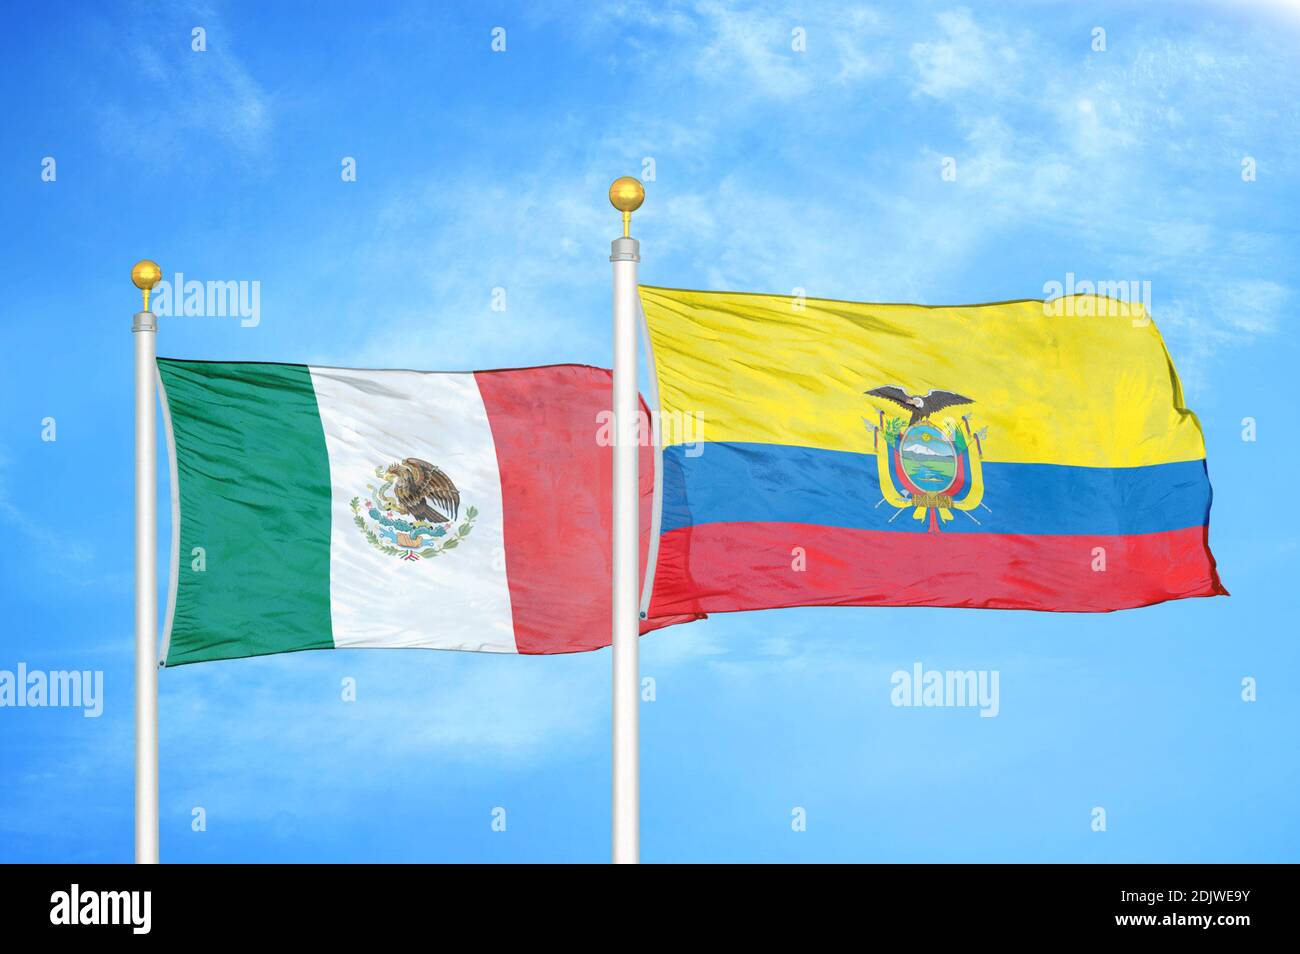 México y Ecuador dos banderas en los postes de bandera y azul nublado